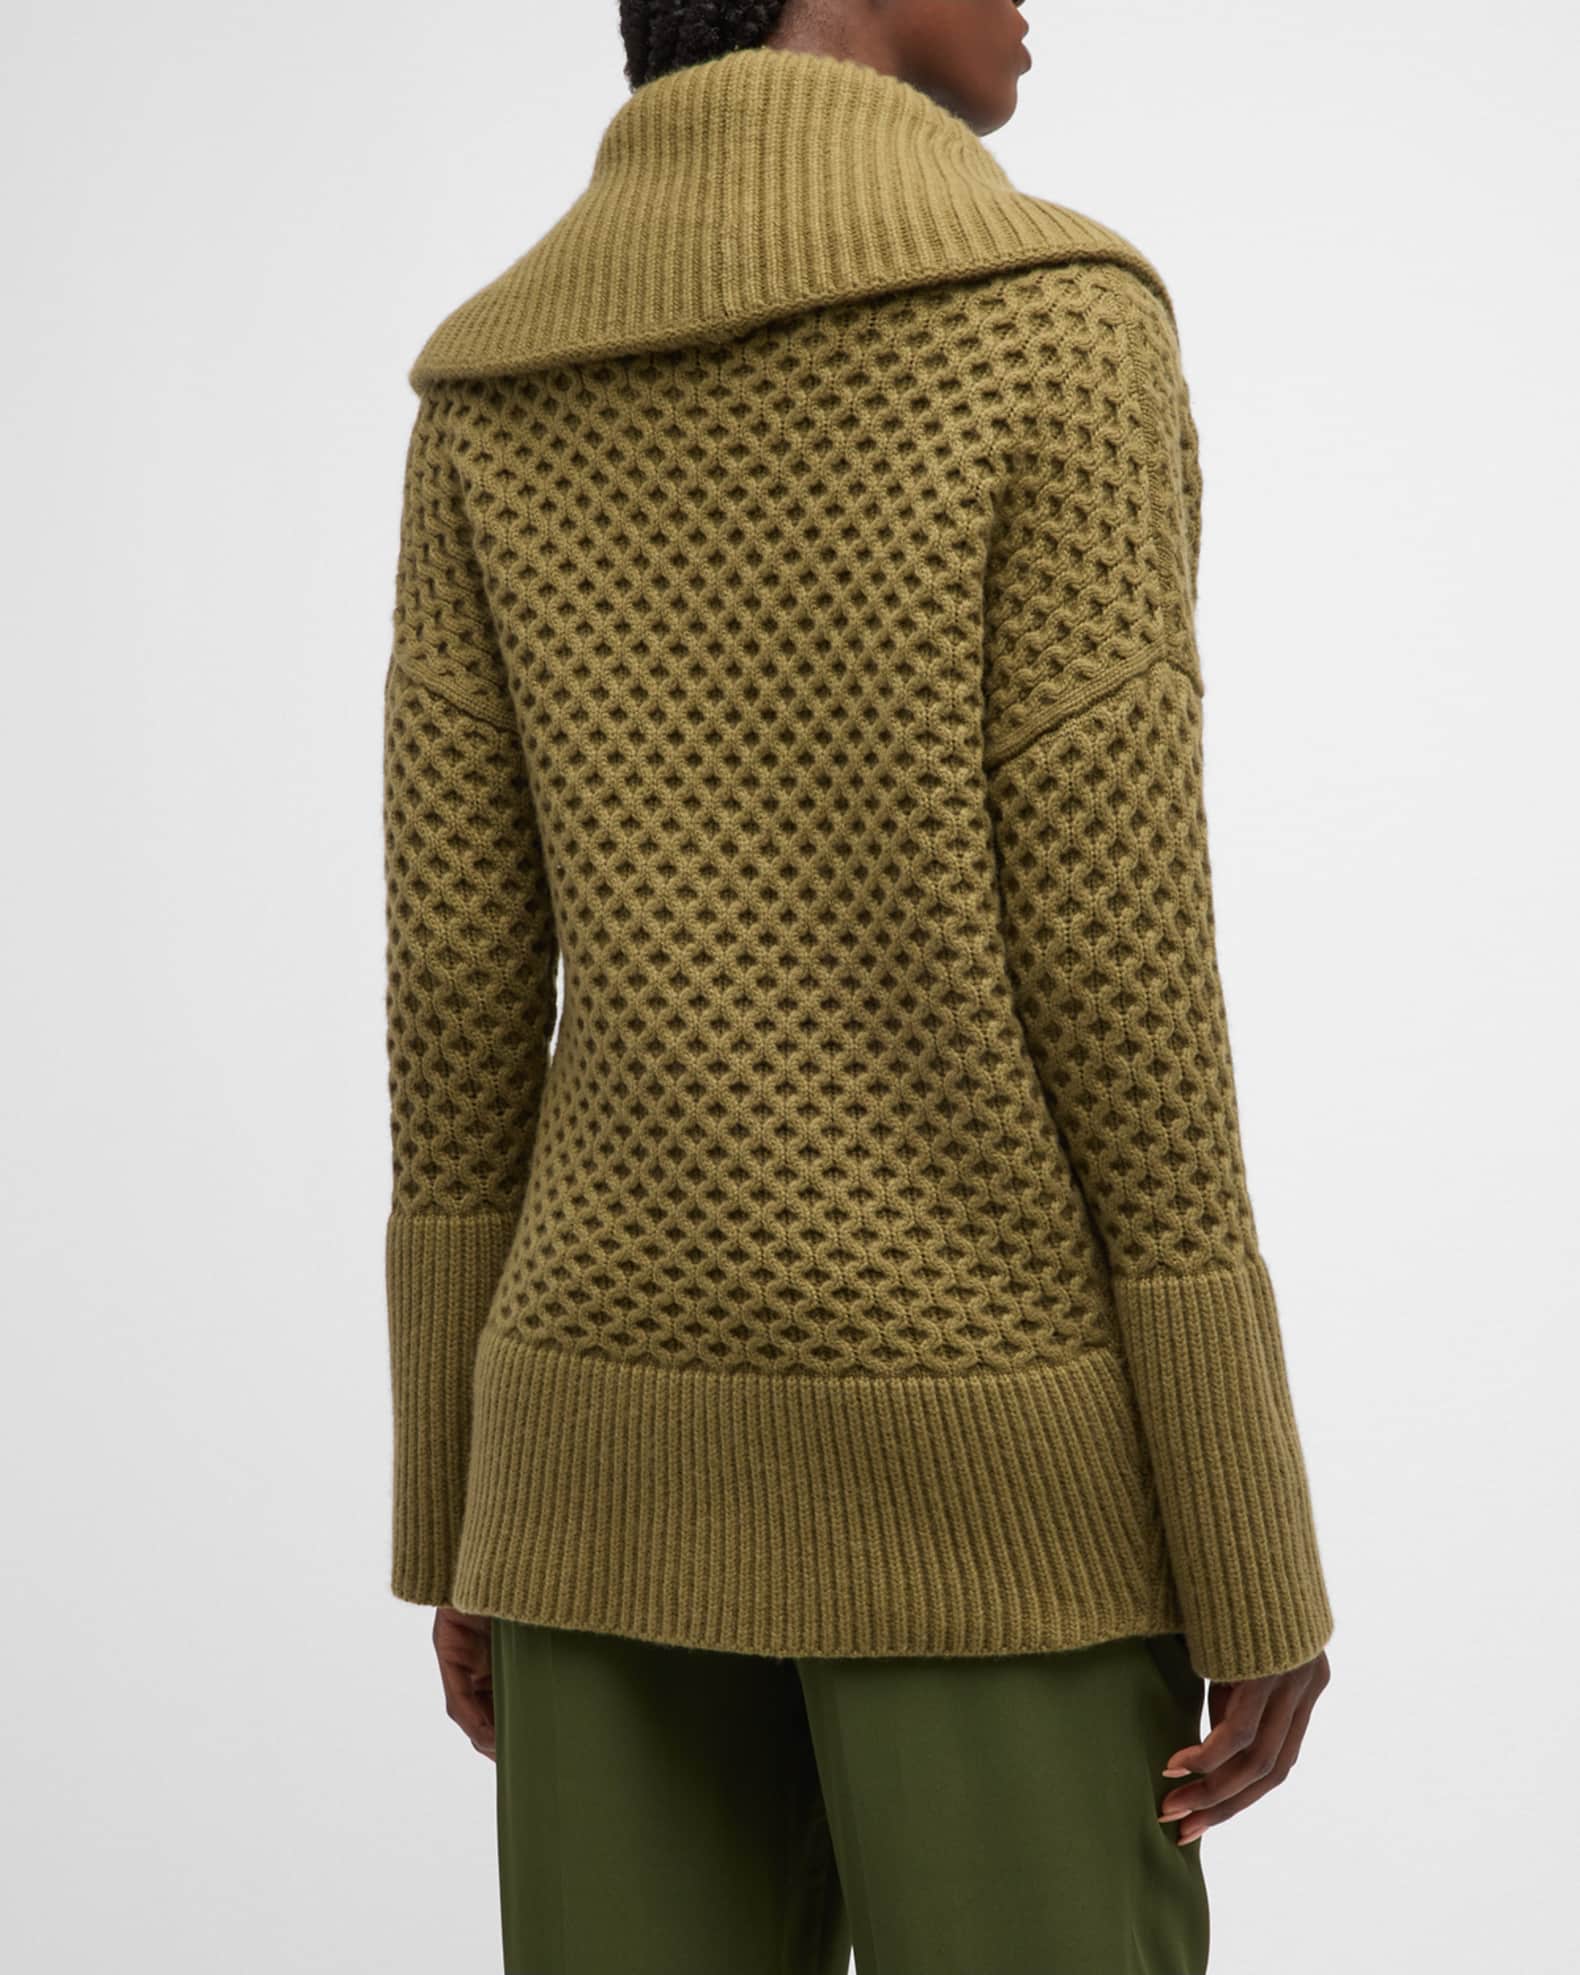 Louis Vuitton Zip-Up Shawl Collar Cardigan, Brown, M